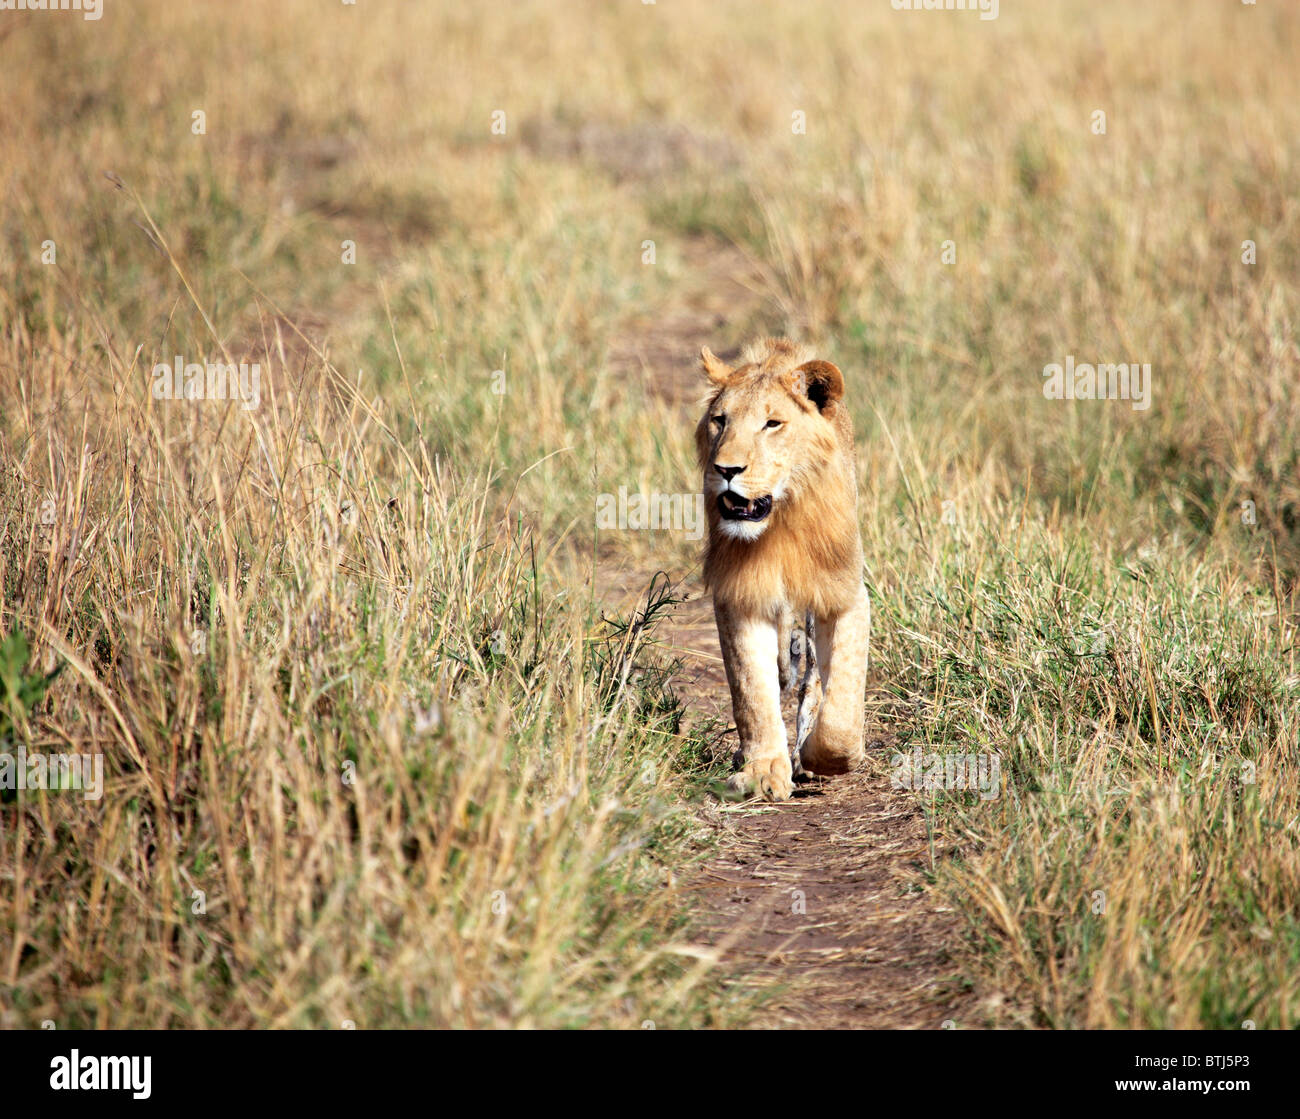 Lion (Panthera leo), Kidepo national park, Uganda, East Africa Stock Photo